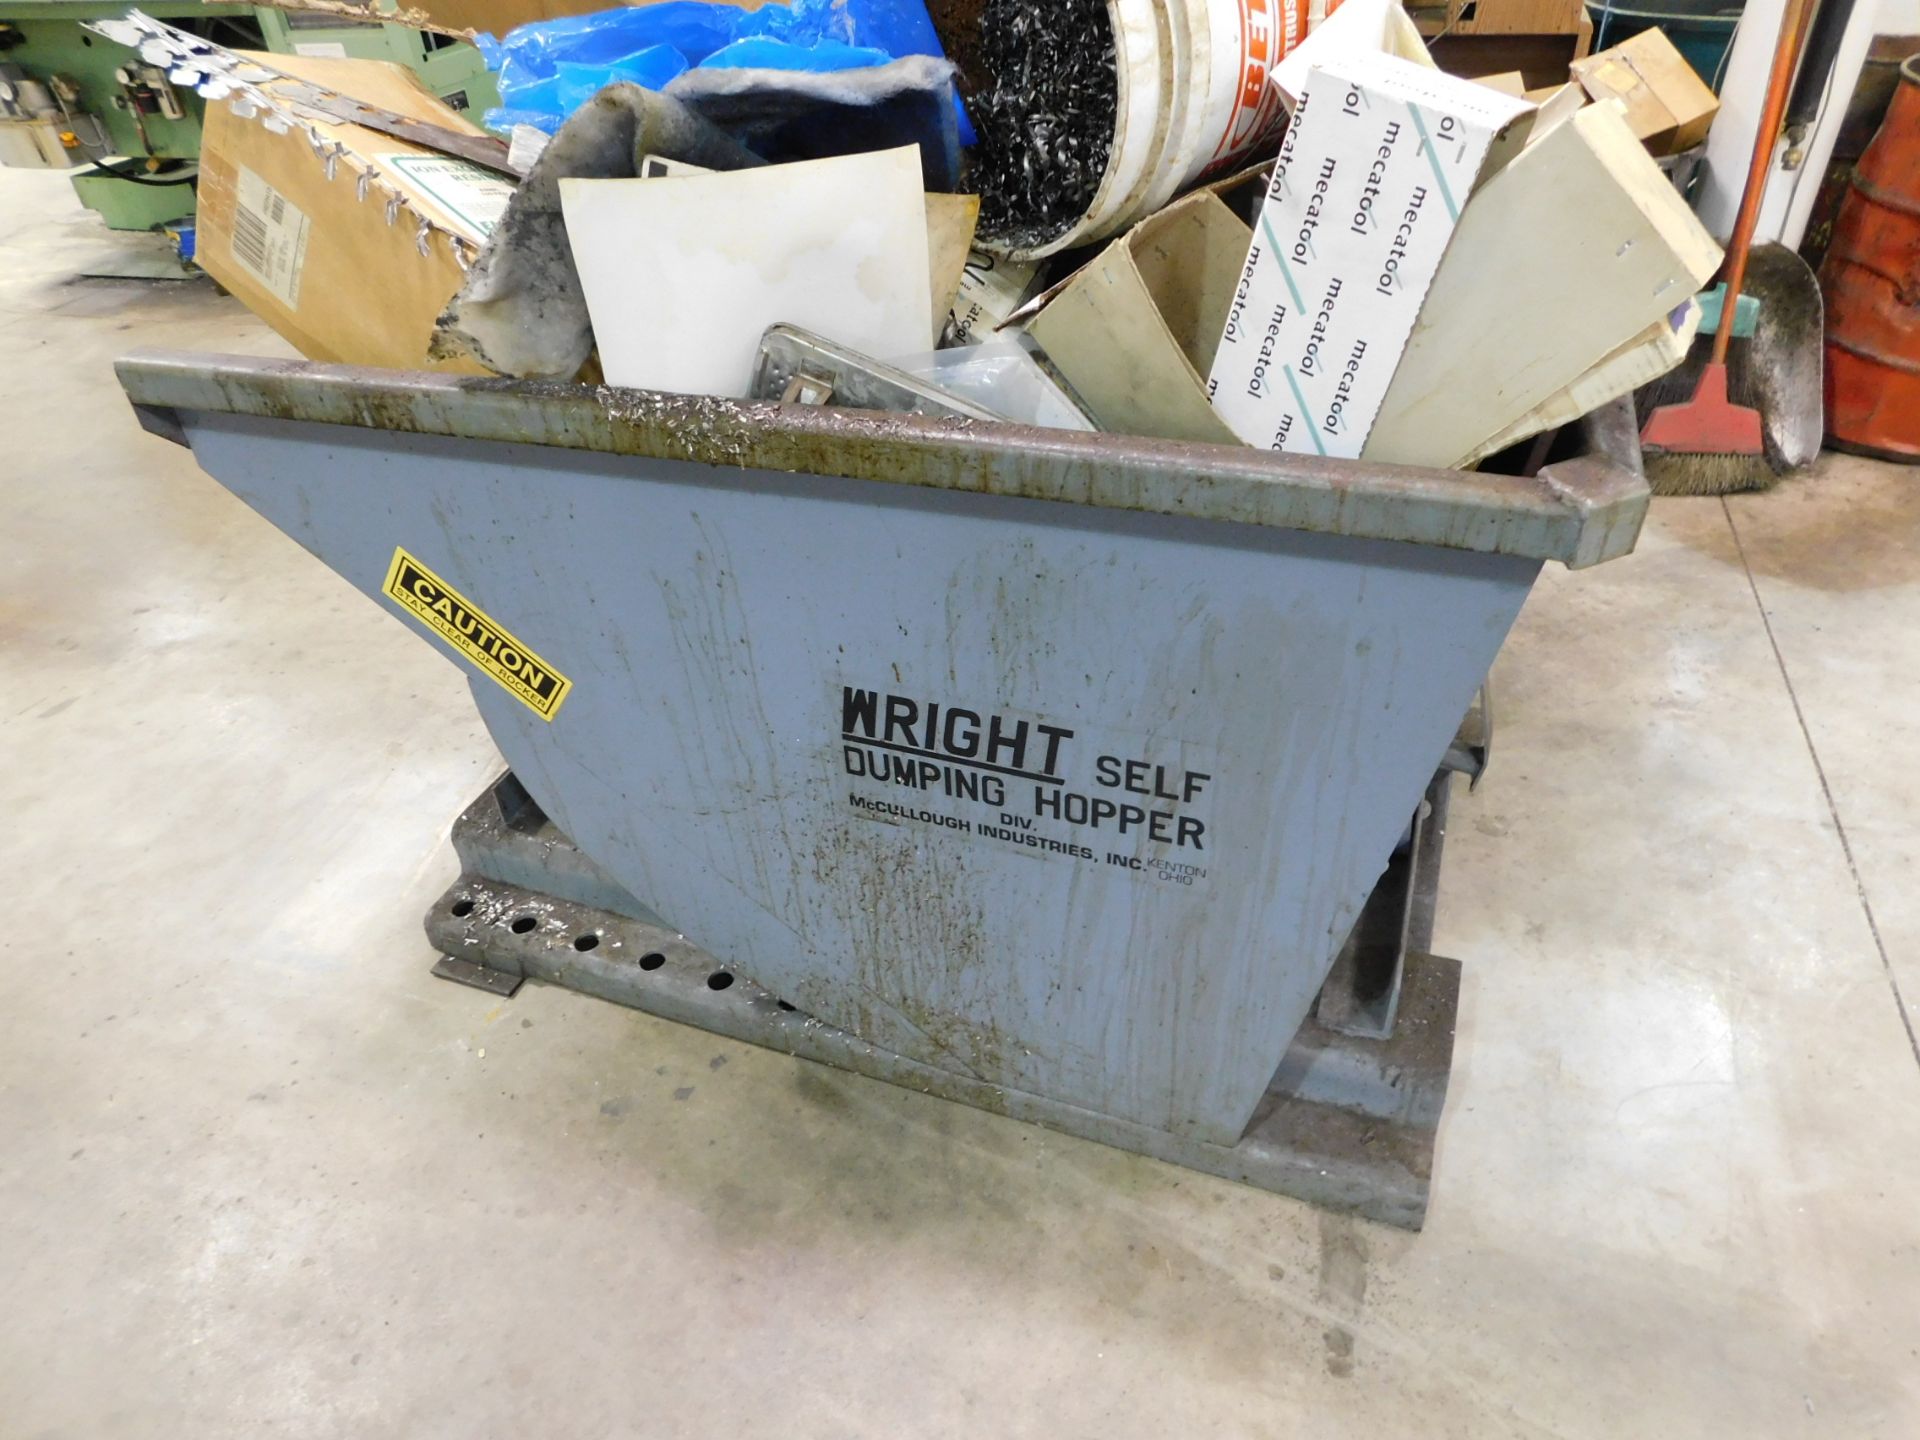 Wright Self Dumping Hopper